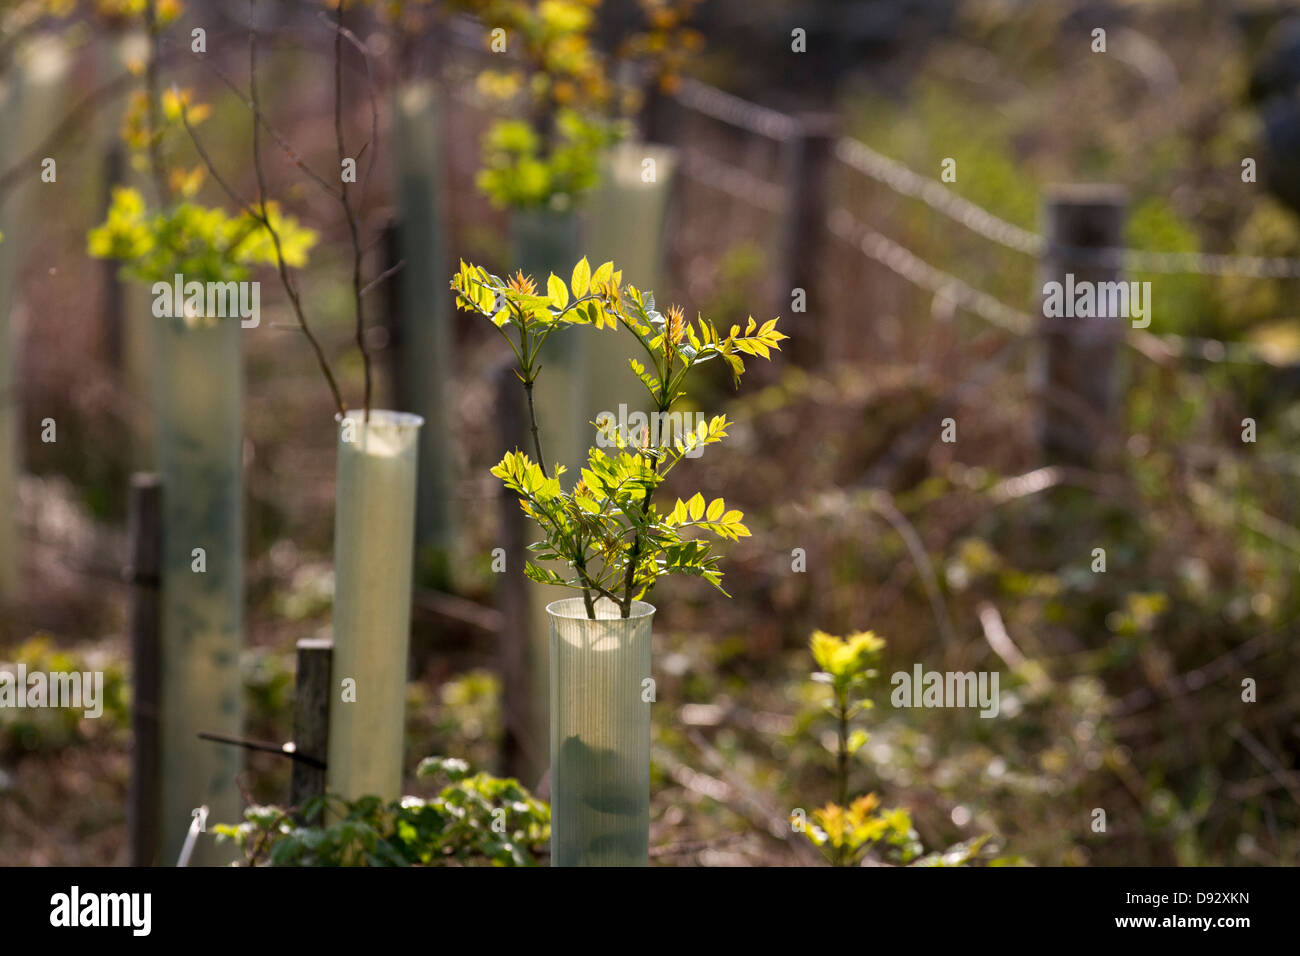 Croissance printanière sur Sorbus aucuparia Rowan. Jeunes Ash protégés par des tubes d'arbres, poussant dans la plantation forestière, North Yorkshire Moors, Garsdale, Royaume-Uni Banque D'Images